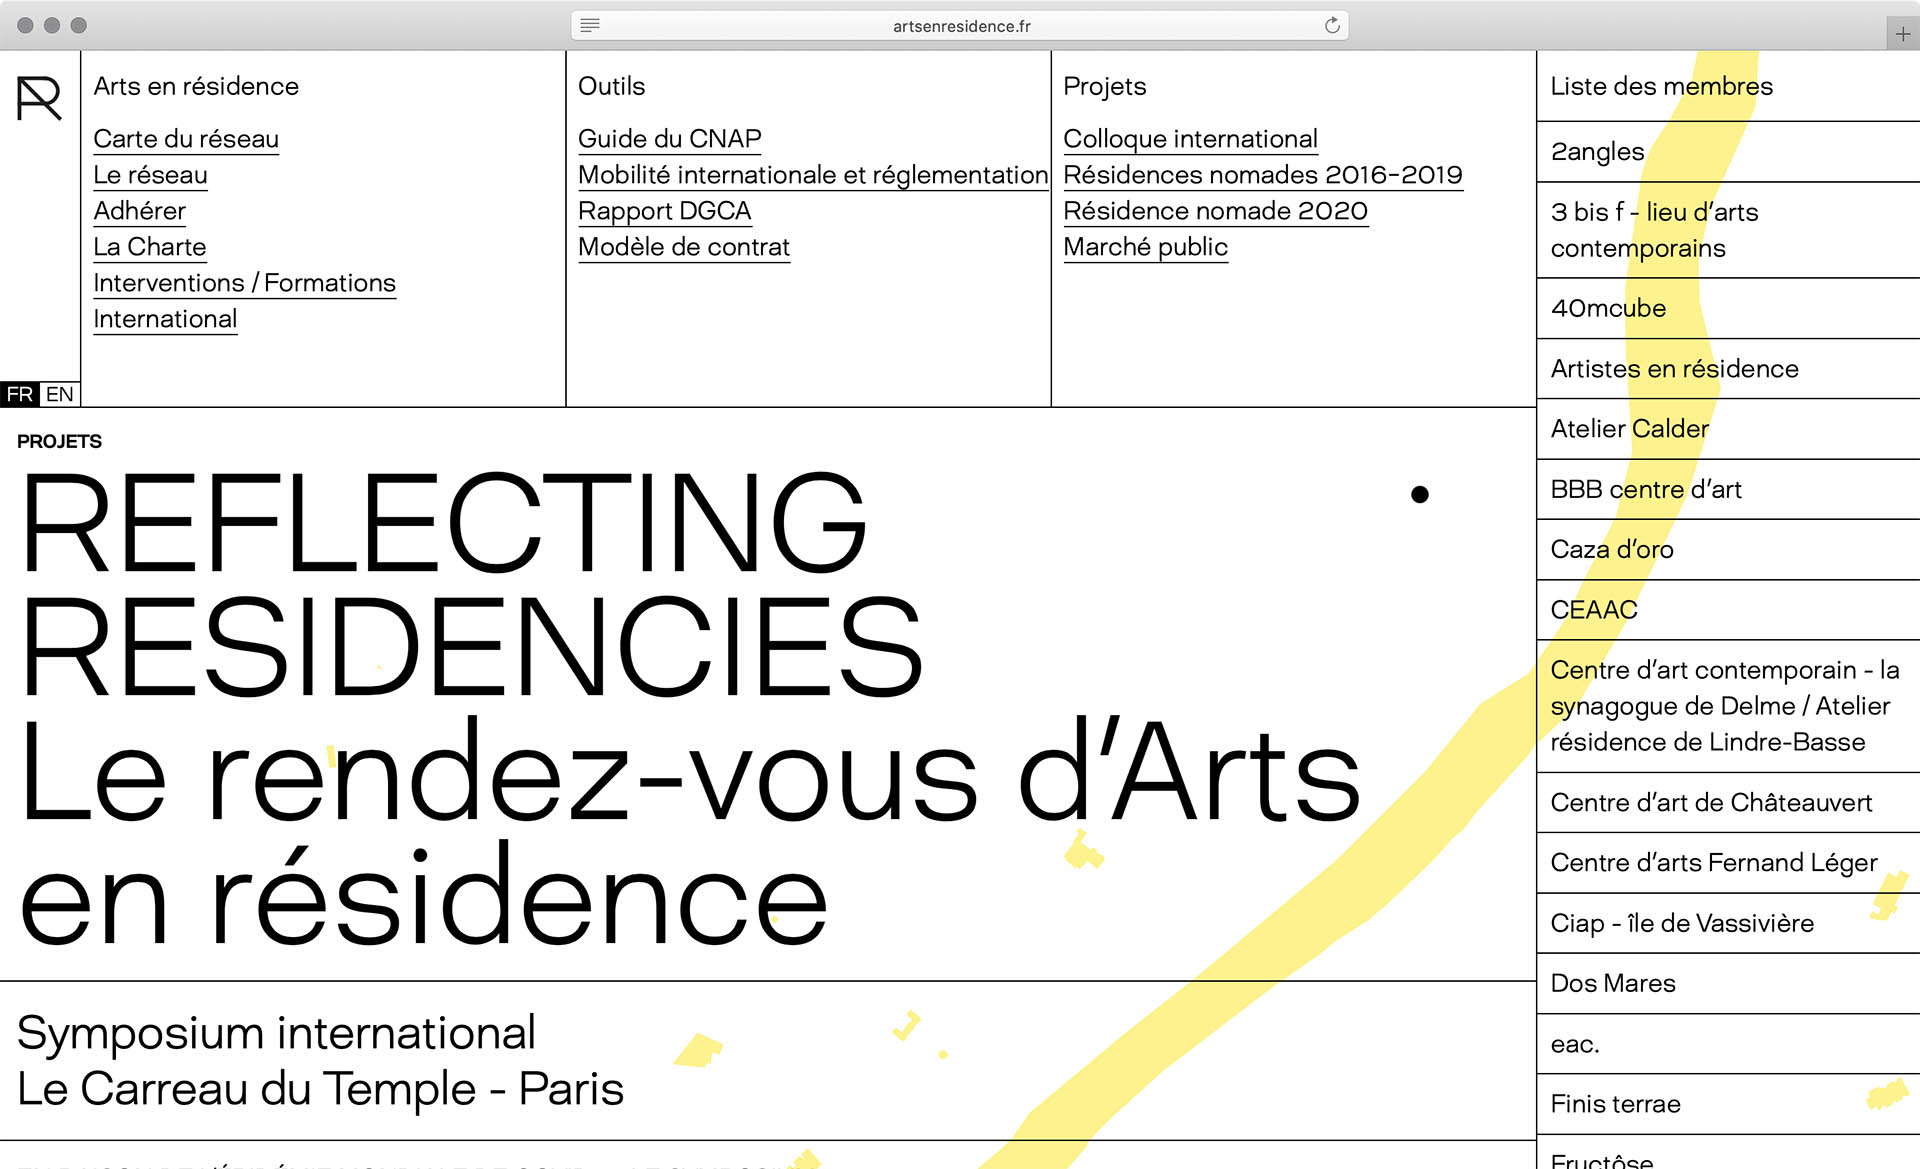 Cyril Makhoul - (link: https://www.artsenresidence.fr/ text: Arts en résidence) — Visual Identity and webdesign (with (link: https://benoitb.studio/ text: Benoit Böhnke))